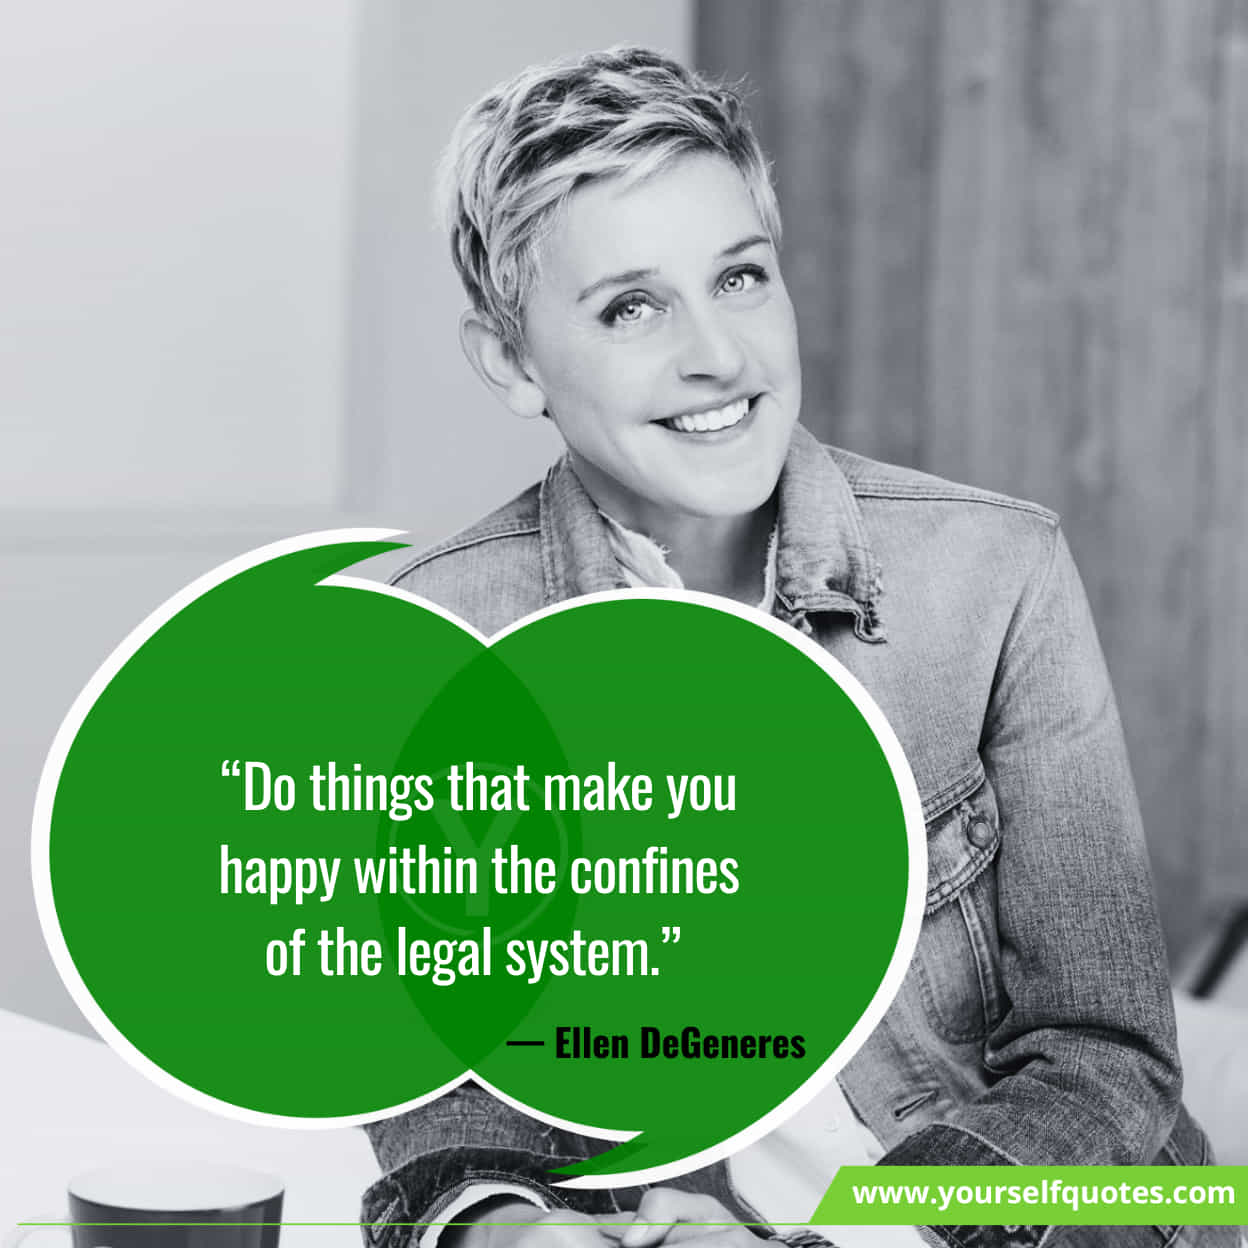 Ellen DeGeneres Inspiring Quotes